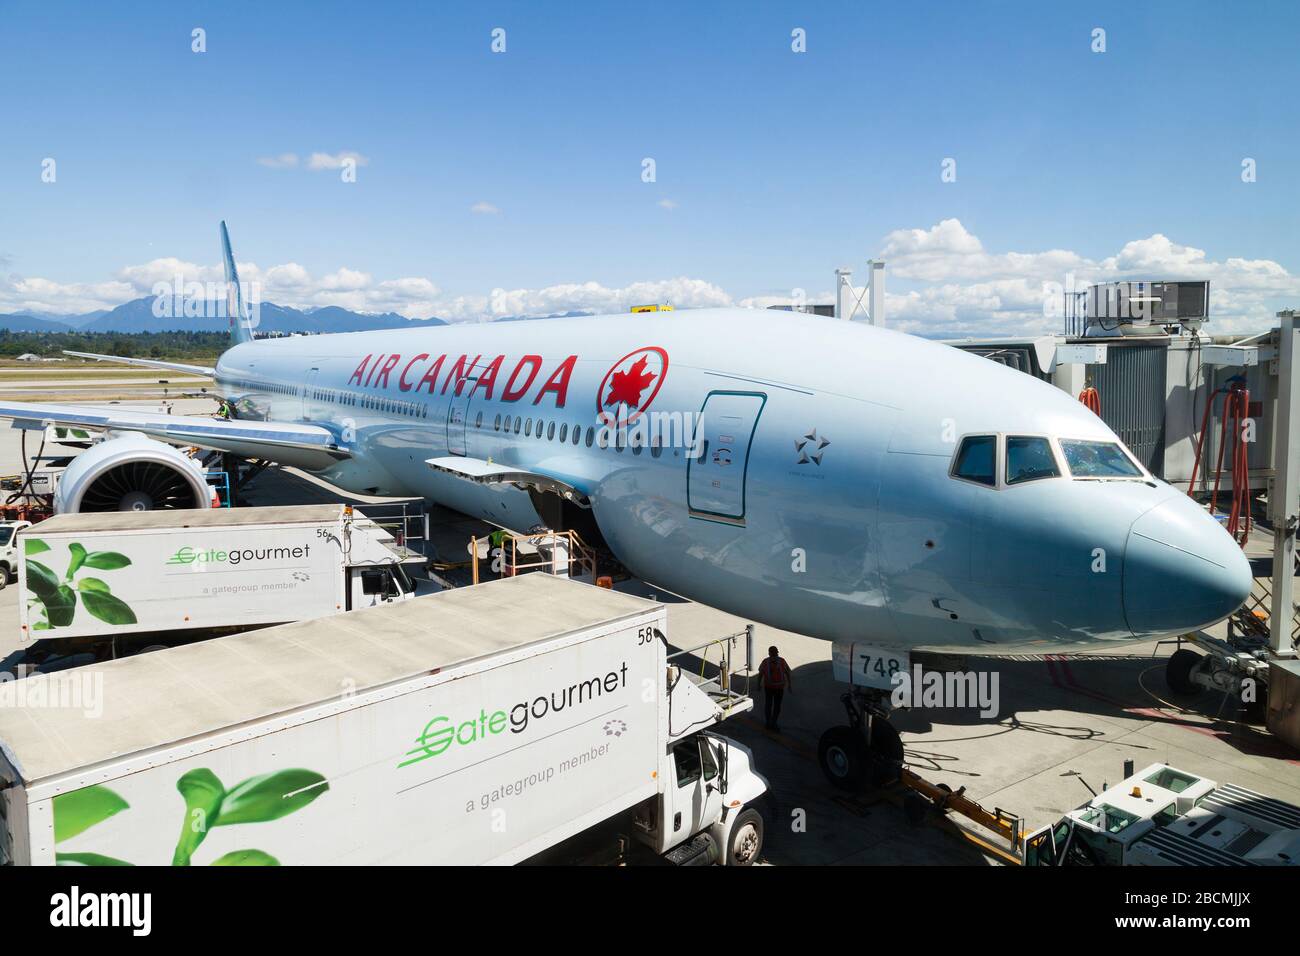 Vancouver, Canada - 3 juillet 2017 : un avion Boeing 777 d'Air Canada Airlines est desservi sur le tarmac de l'aéroport international de Vancouver. Banque D'Images